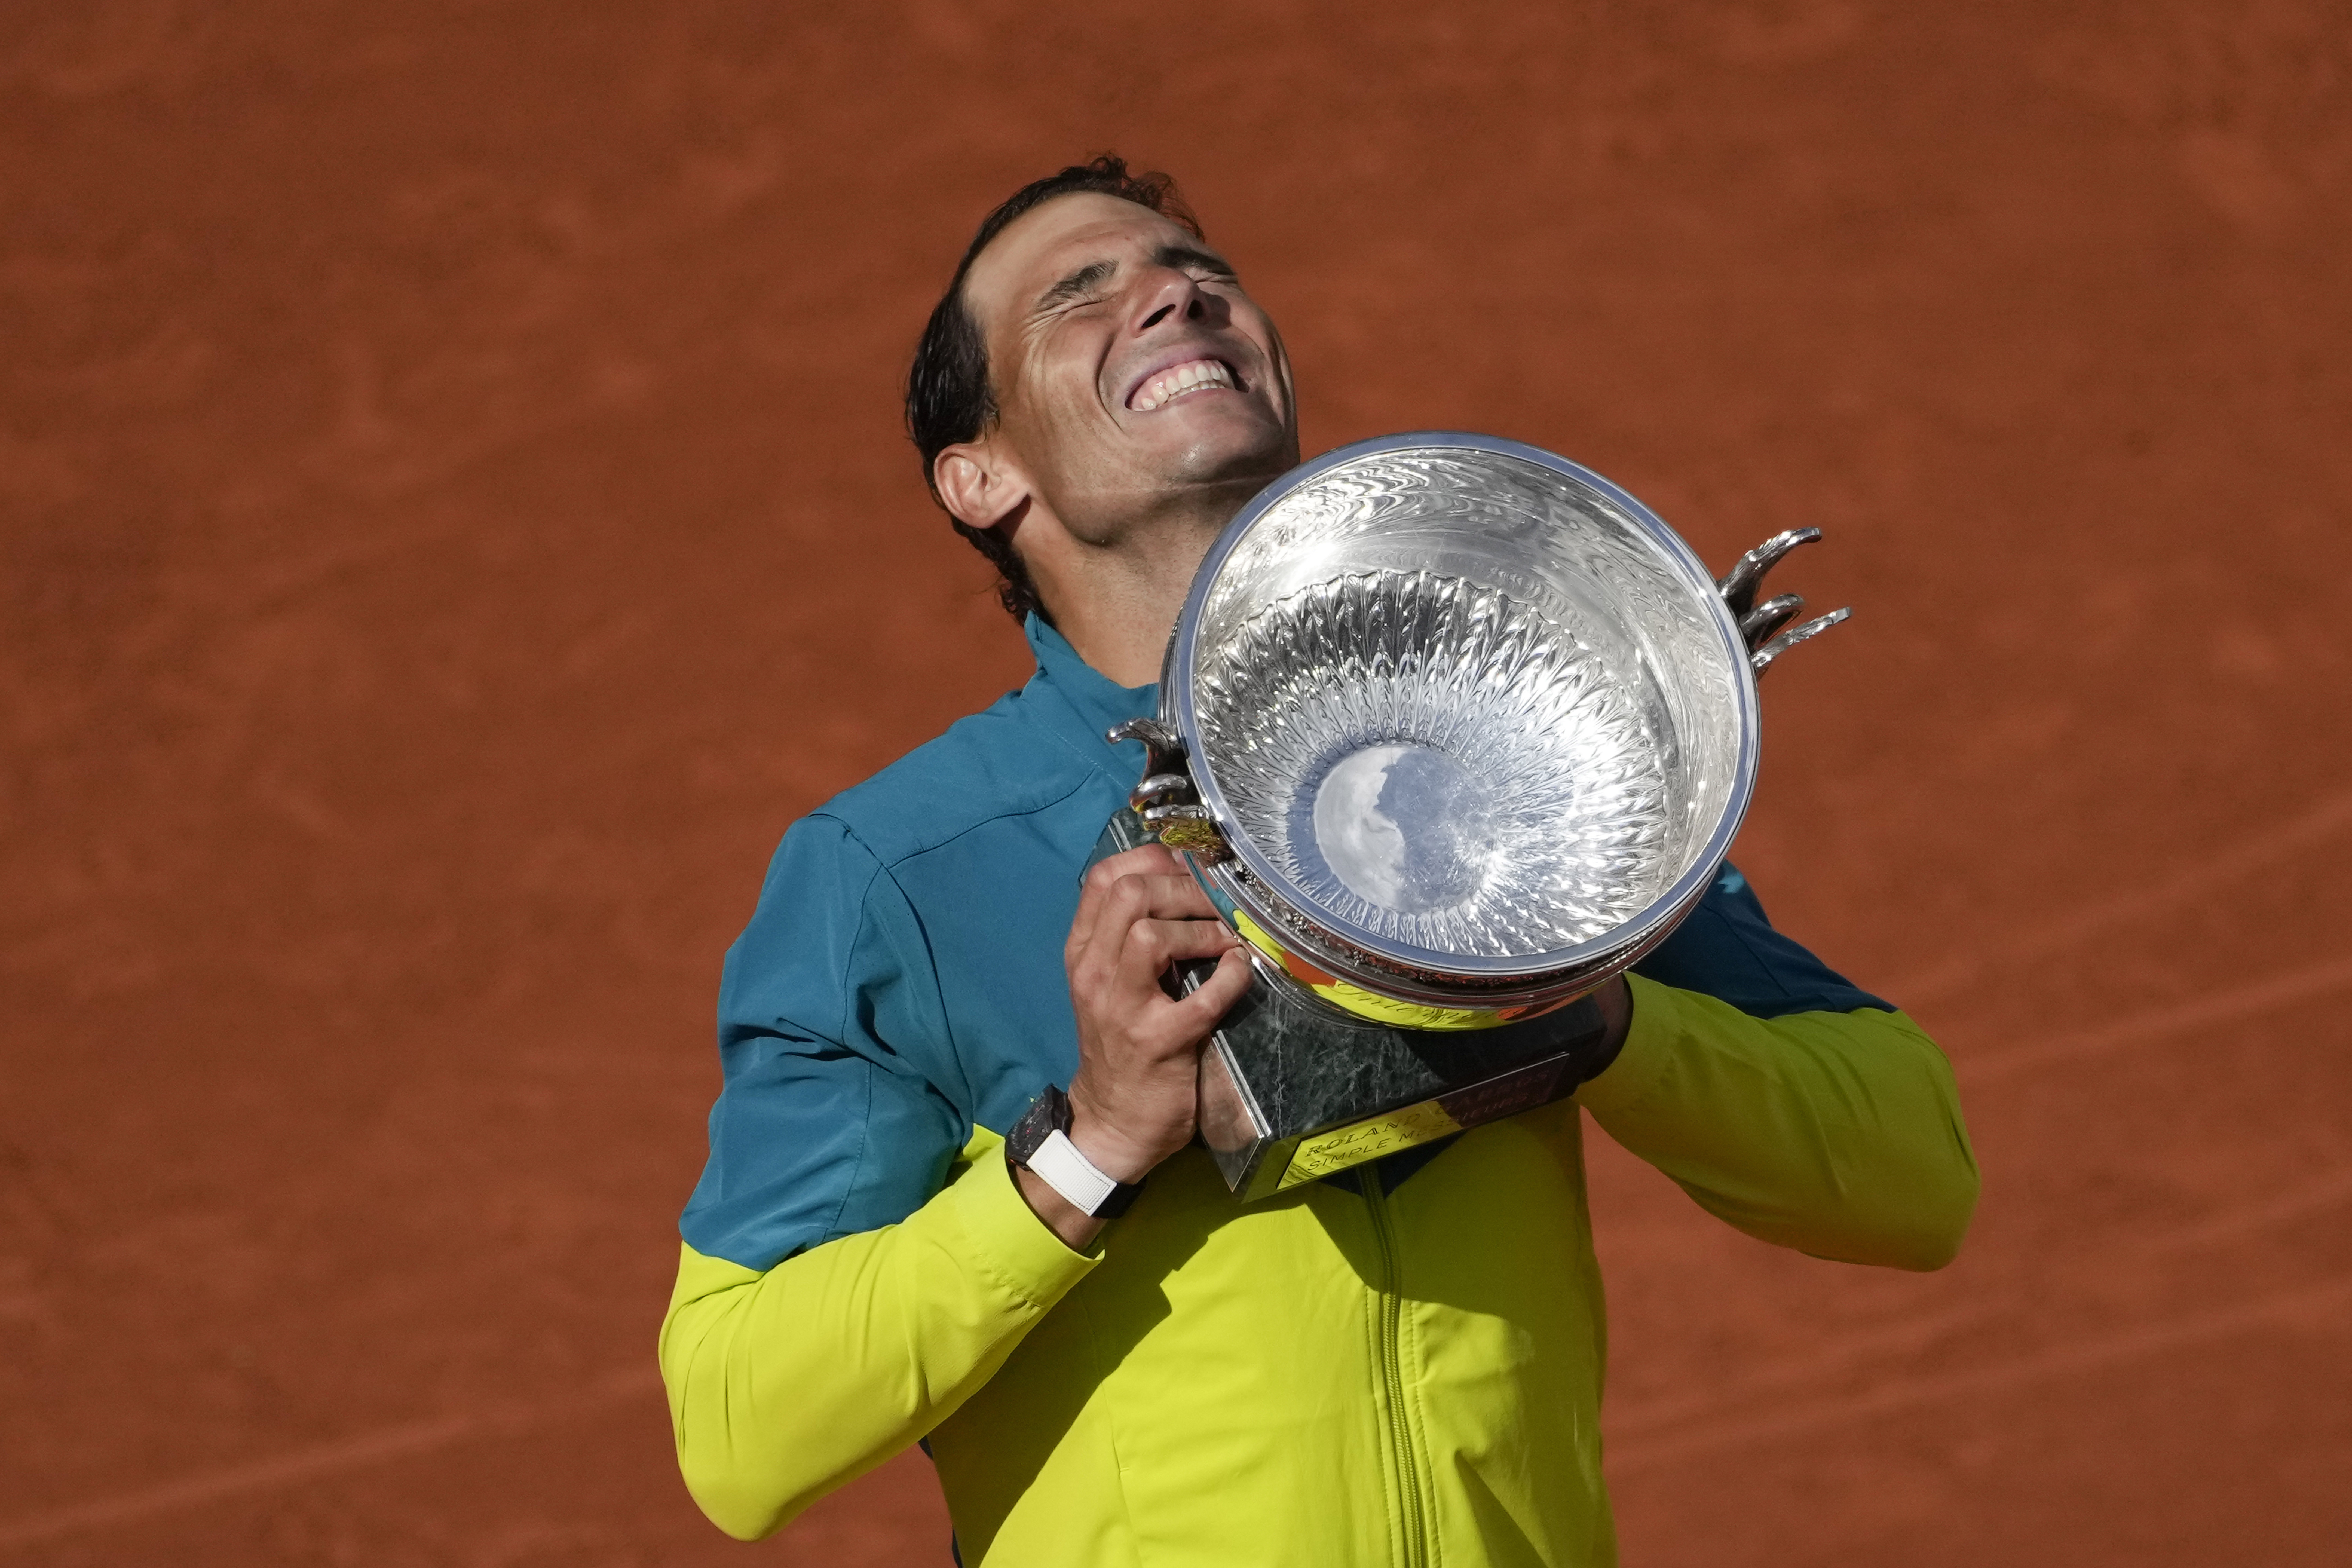  Rafael Nadal alza el trofeo de campeón después de ganar la final del Abierto de Francia (AP Foto/Christophe Ena, Archivo)